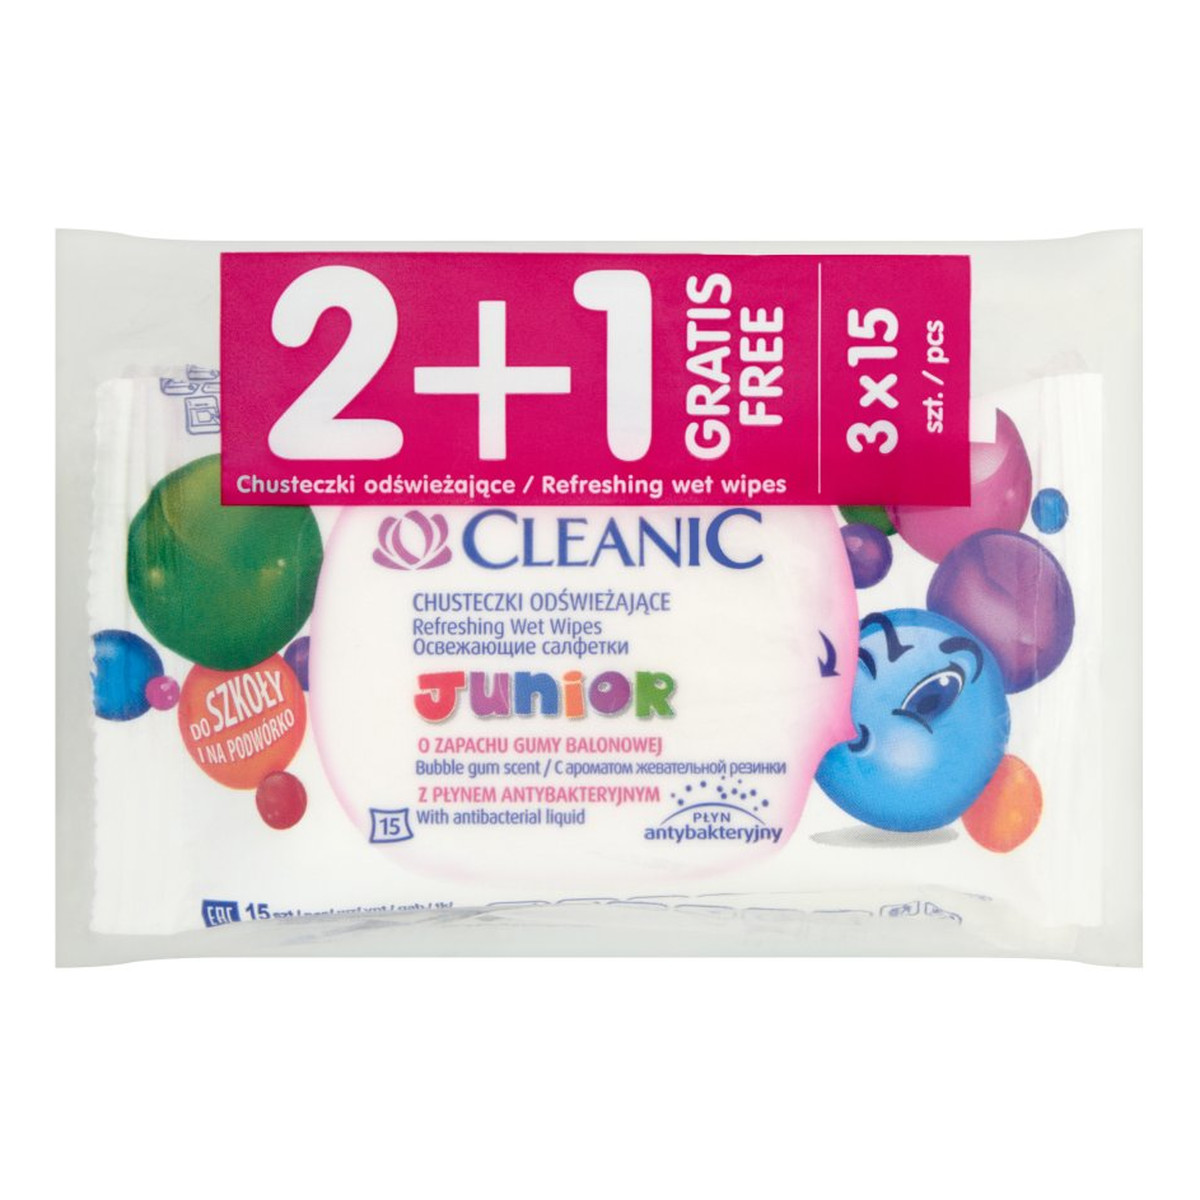 Cleanic Junior Chusteczki odświeżające o zapachu gumy balonowej 3 x 15 sztuk